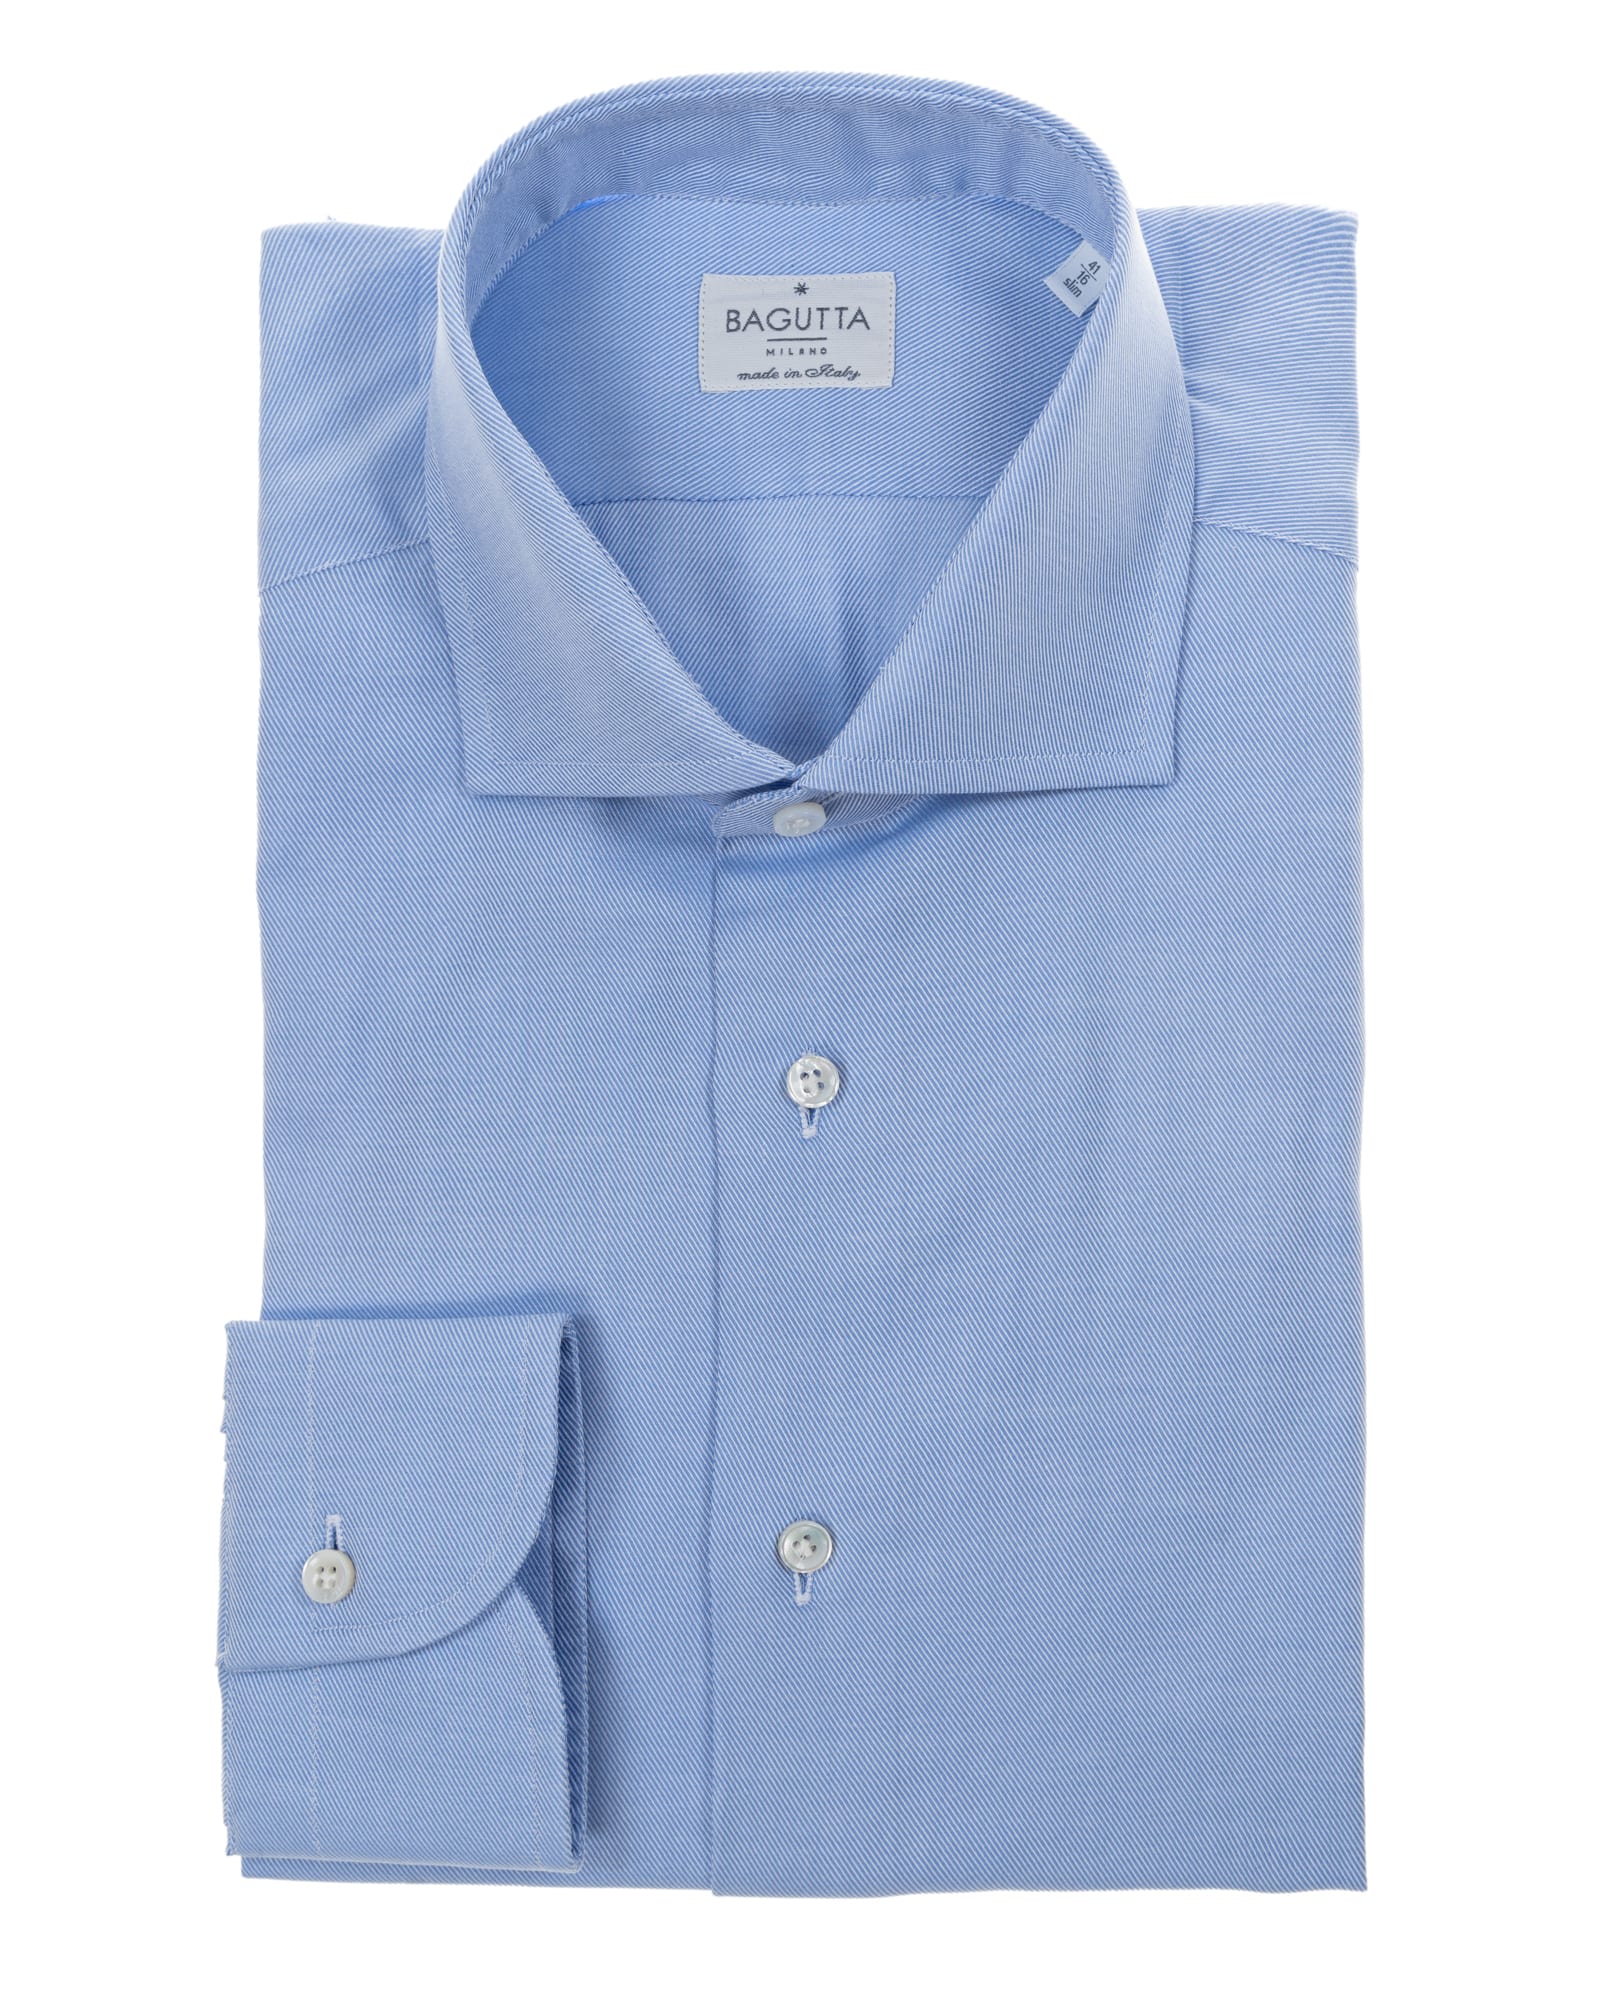 Bagutta light blue cotton shirt